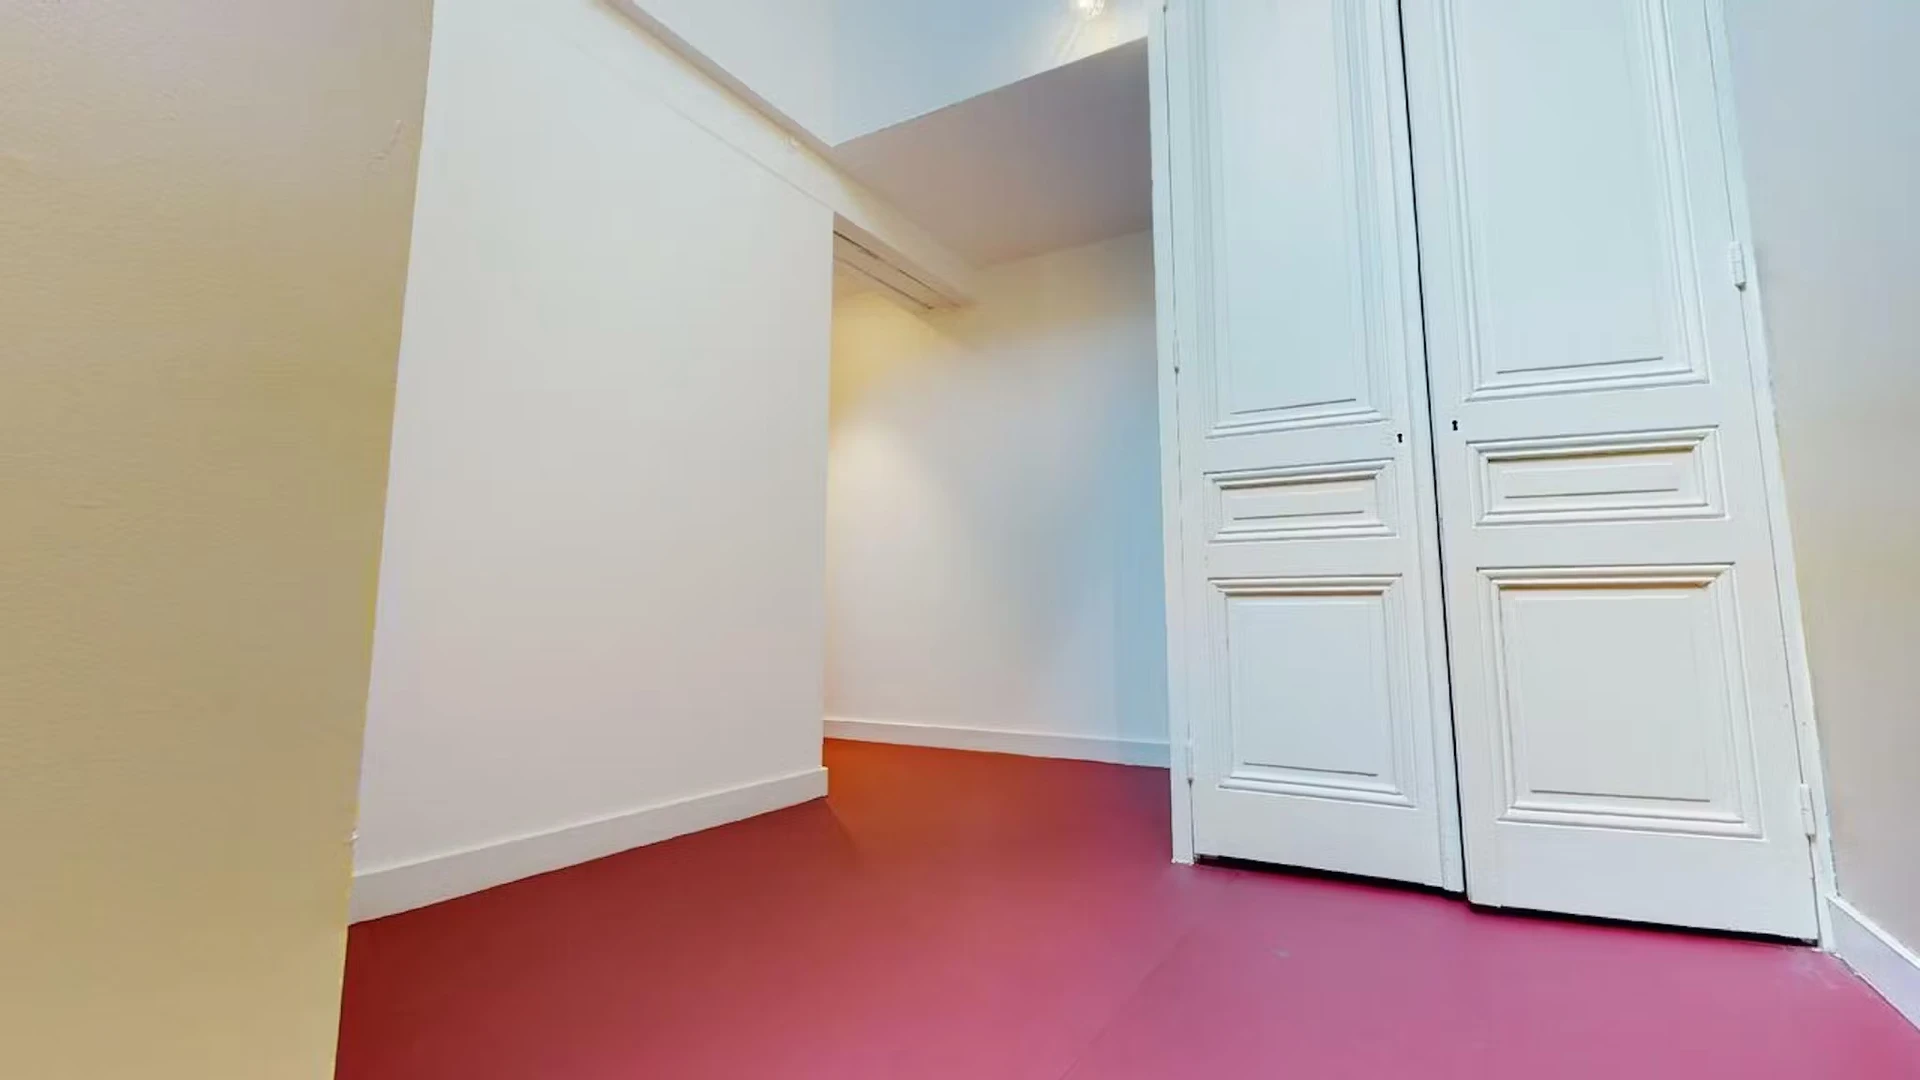 Alquiler de habitación en piso compartido en Saint-étienne